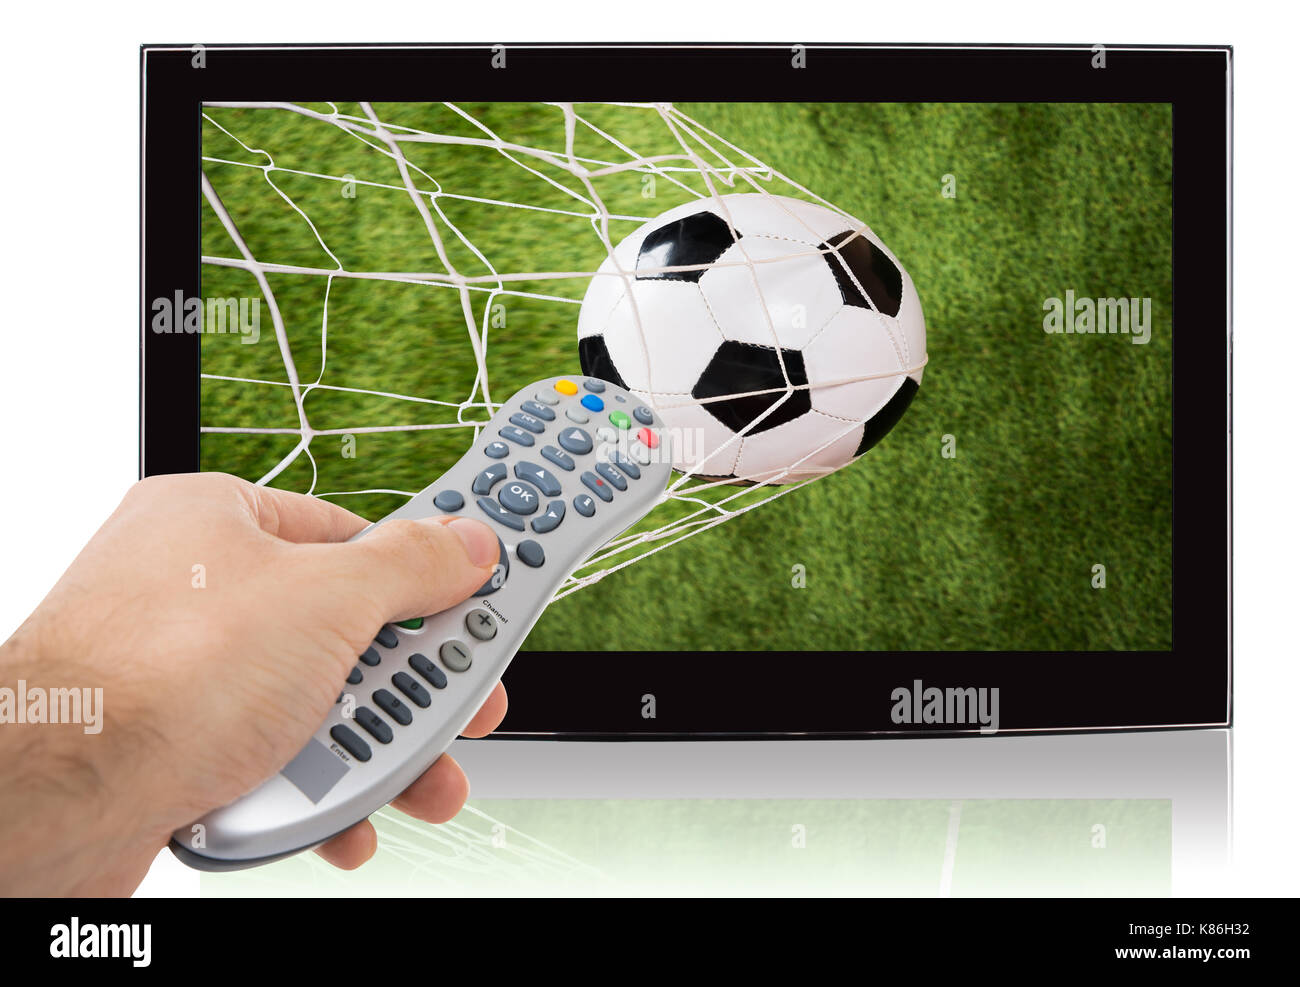 Mano mediante control remoto de ver el fútbol en televisión de pantalla plana contra el fondo blanco. Foto de stock